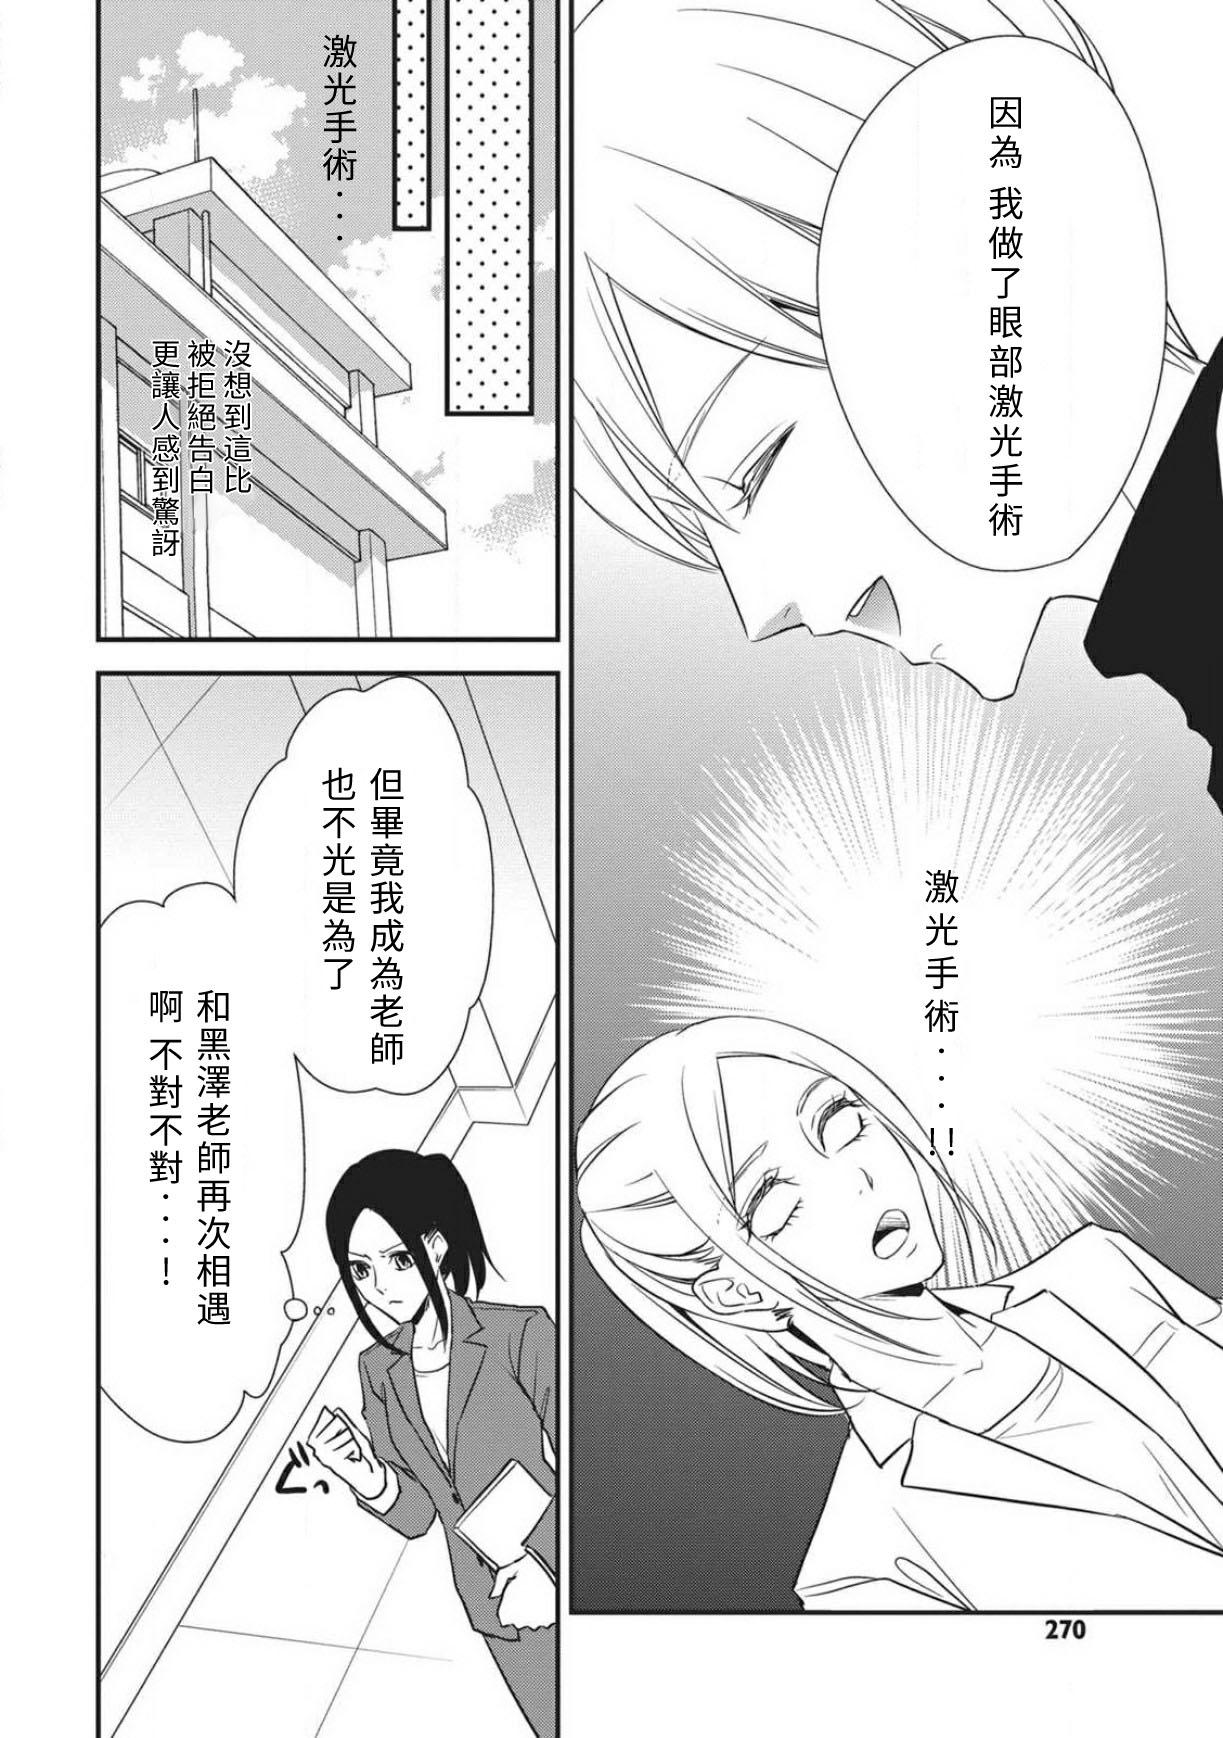 Chaturbate Watashi no hoken no sensei | 我的保健老师 Mediumtits - Page 6